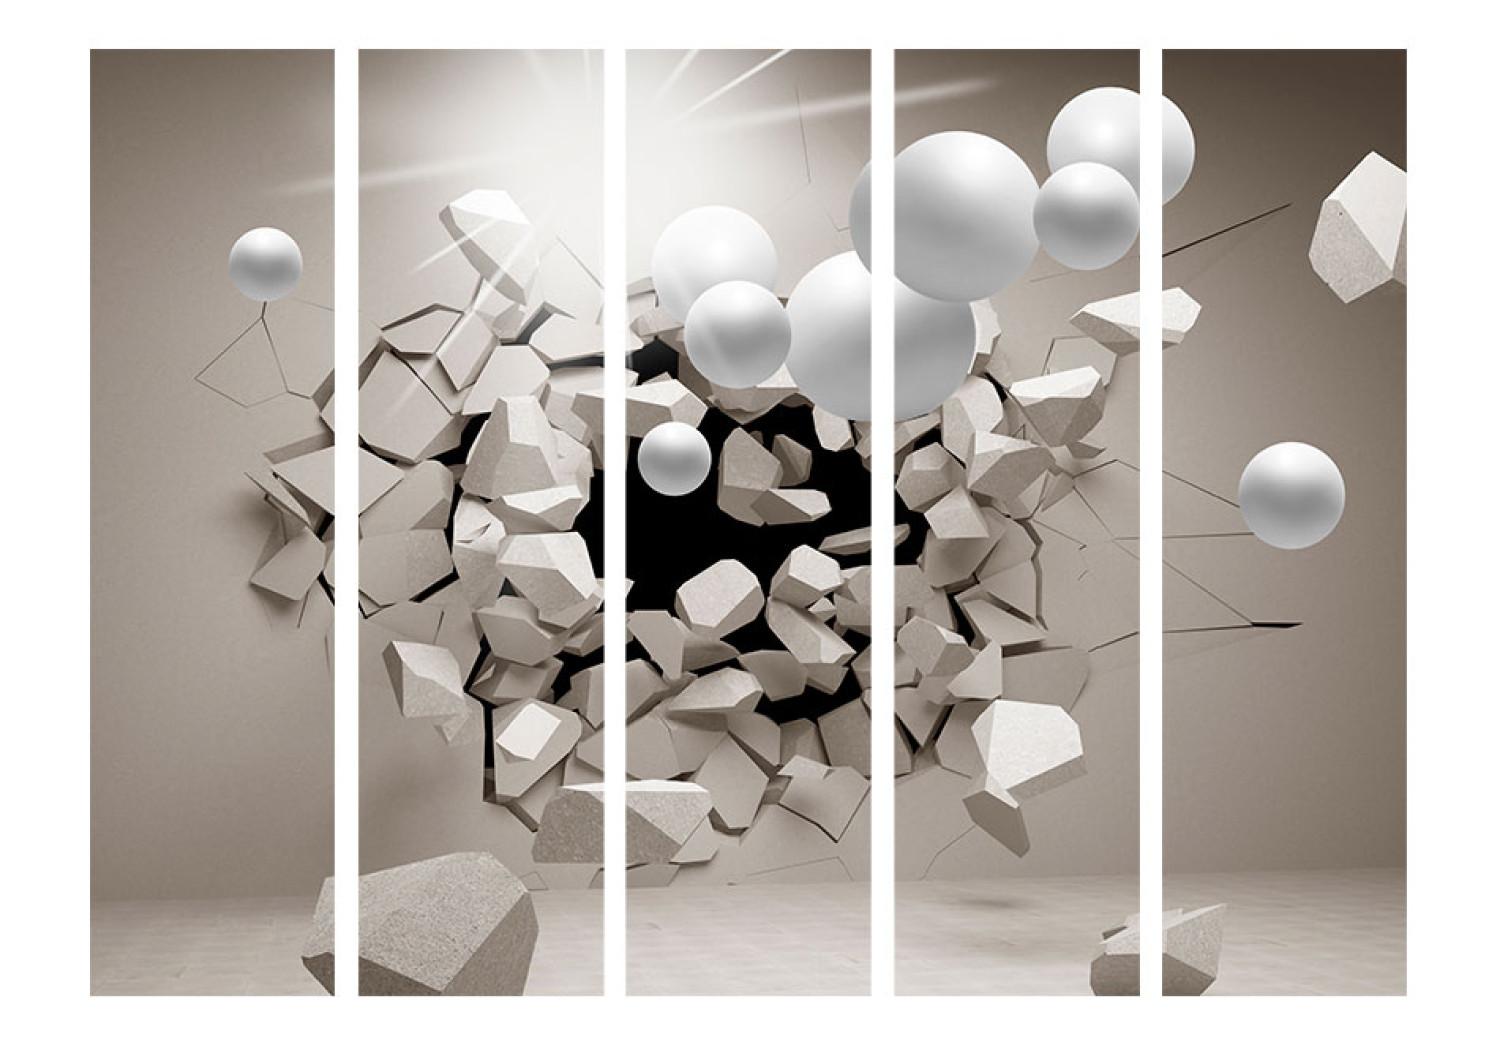 Biombo decorativo ¡Libérame! II - ilusión abstracta de figuras geométricas blancas